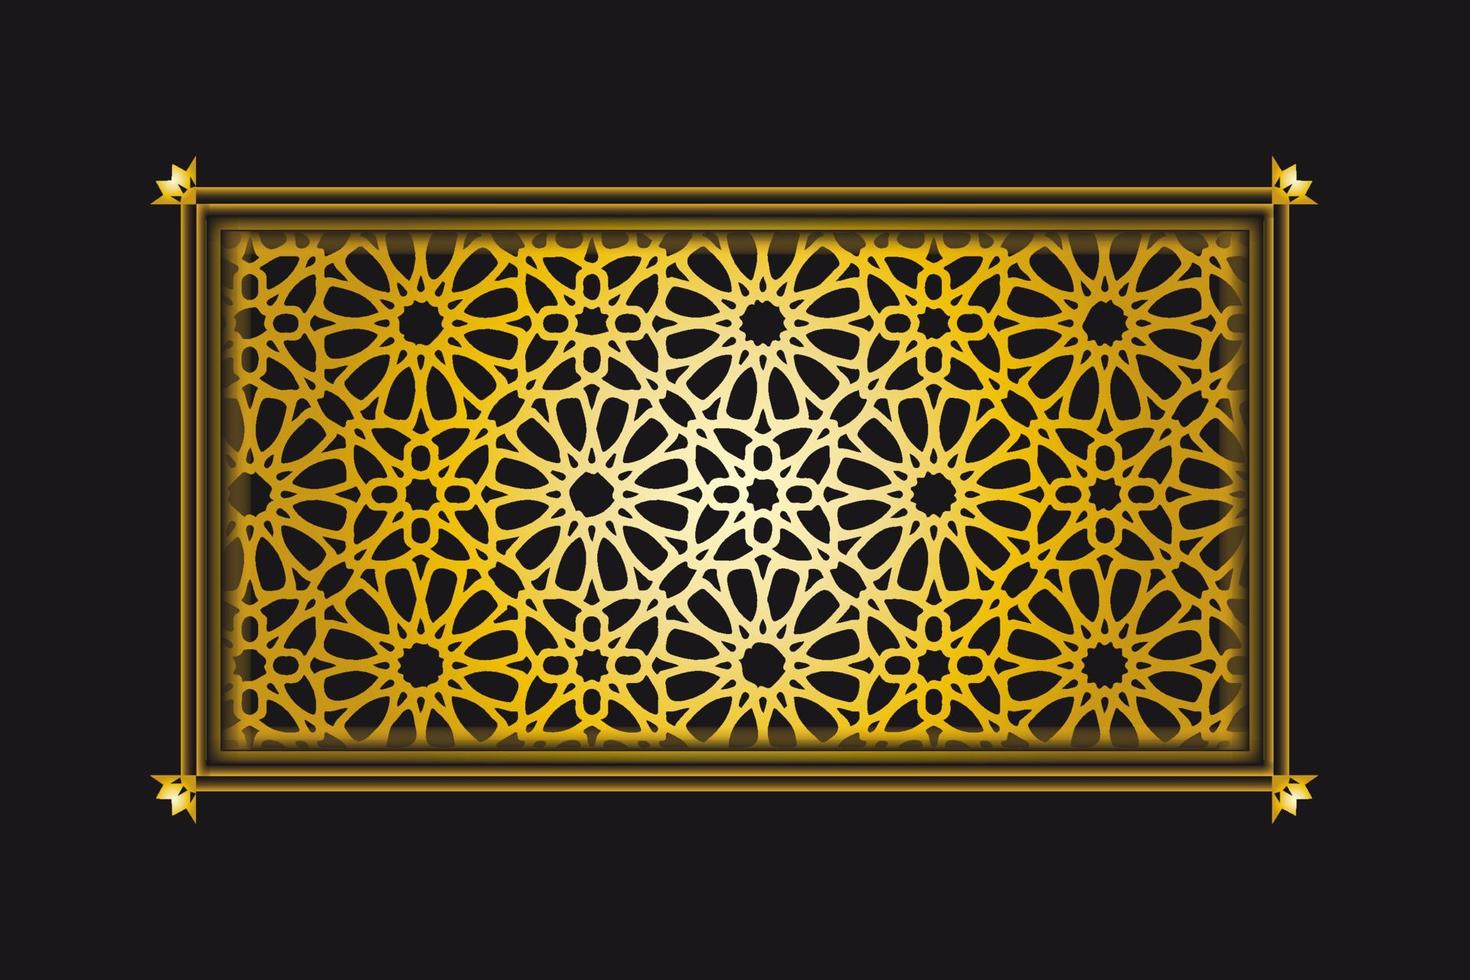 colección de fondo de patrón dorado arabesco, imagen de vector de ornamento islámico de fondo de lujo de oro